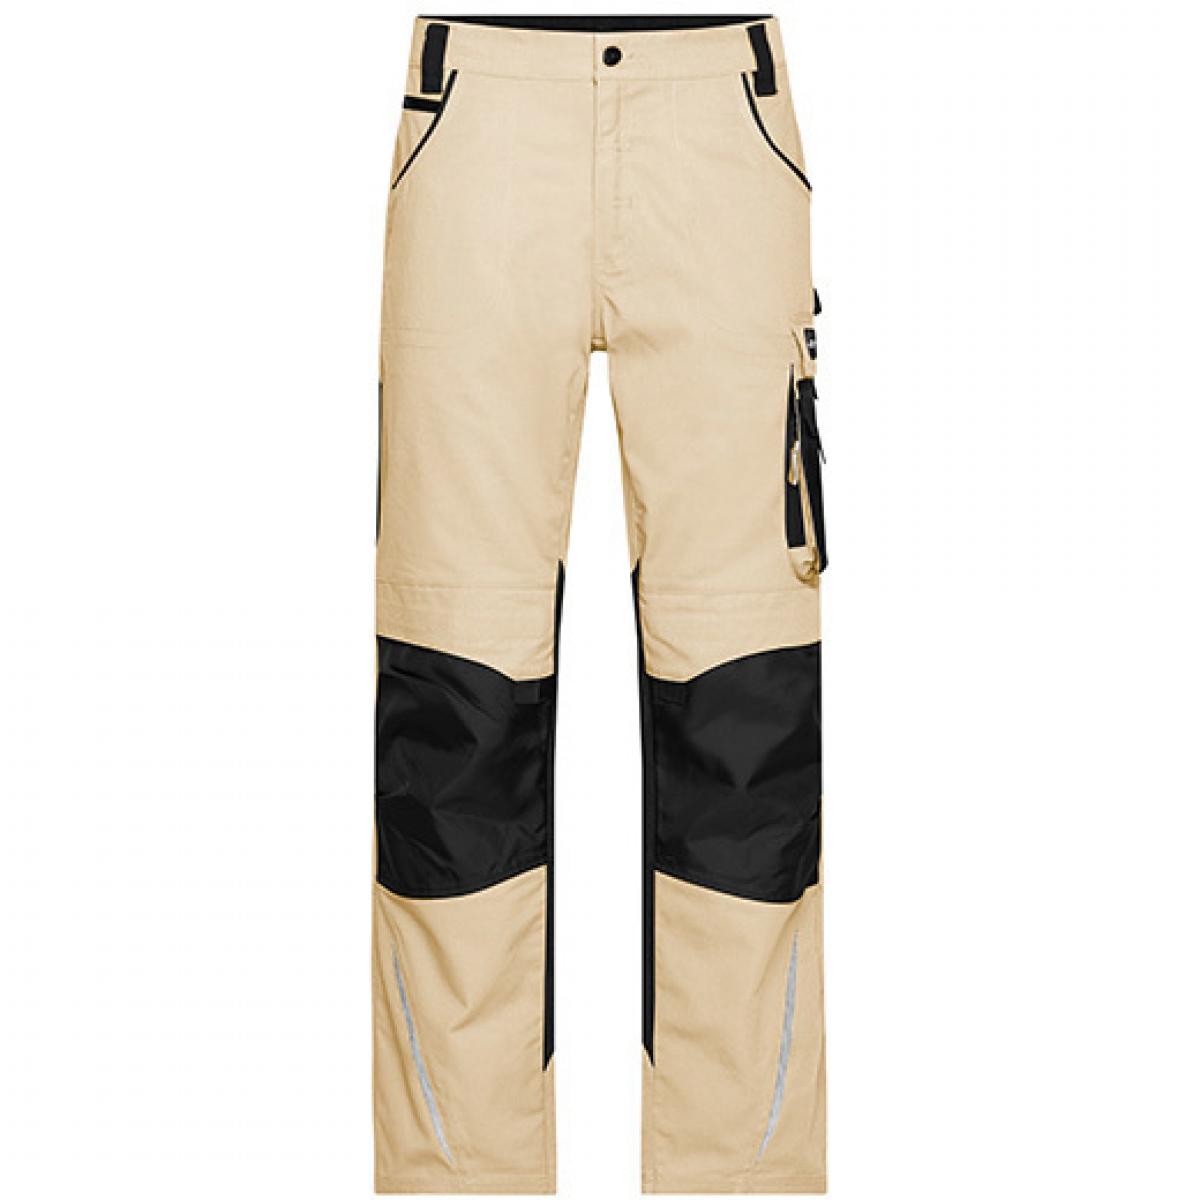 Hersteller: James+Nicholson Herstellernummer: JN832 Artikelbezeichnung: Workwear Pants -STRONG- / Arbeitshose lang Farbe: Stone/Black